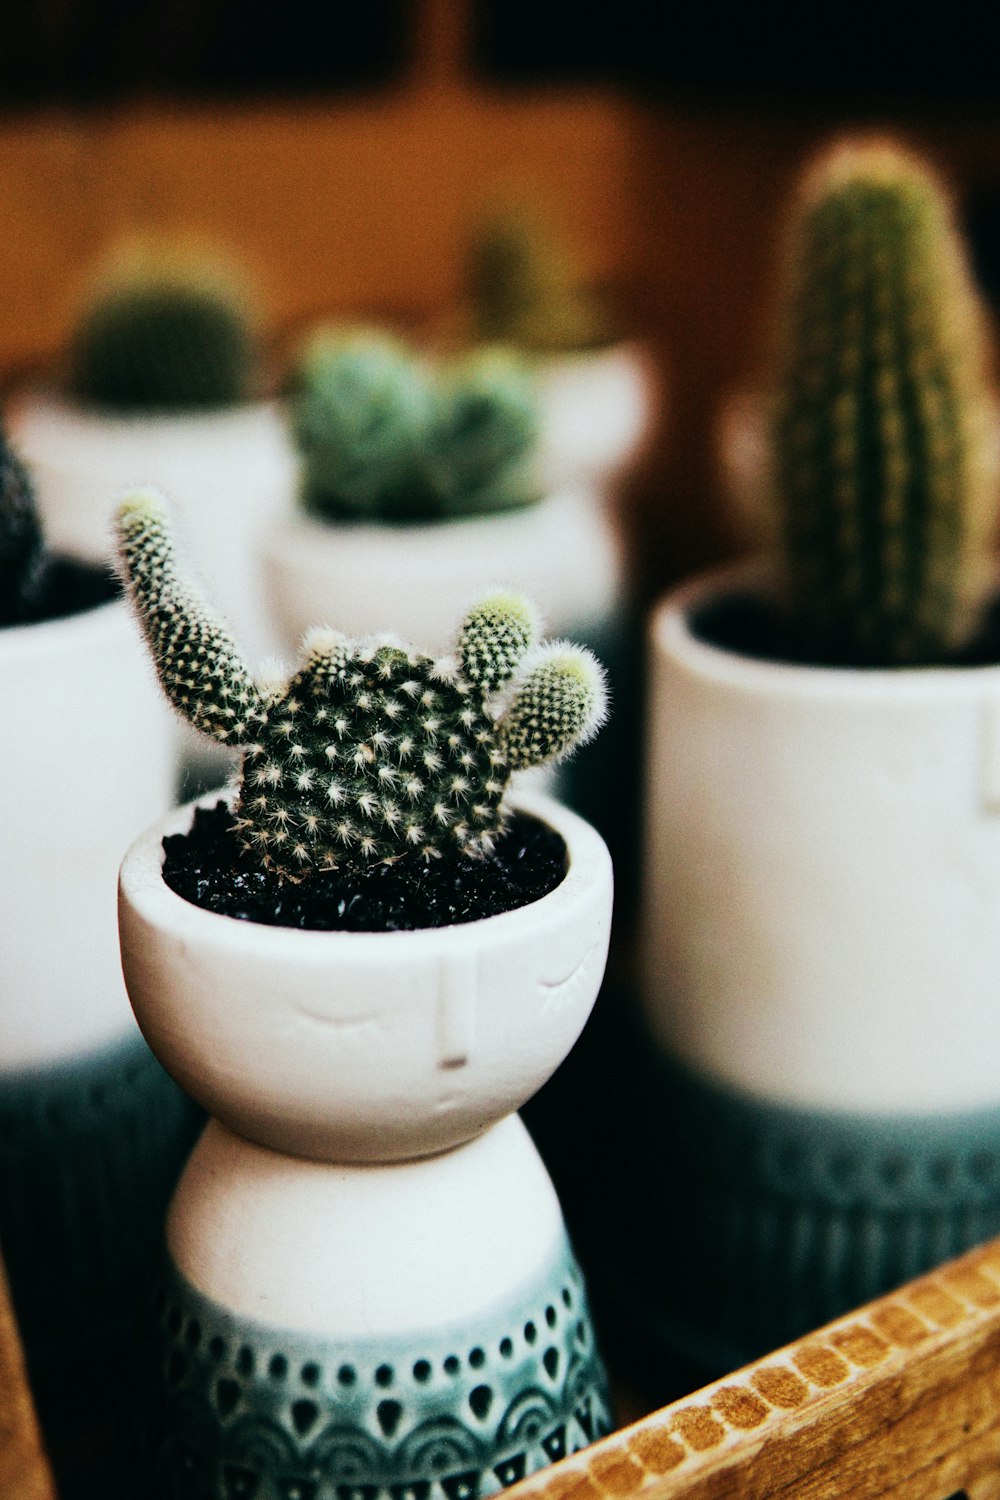 cactus verde in vaso di ceramica bianca